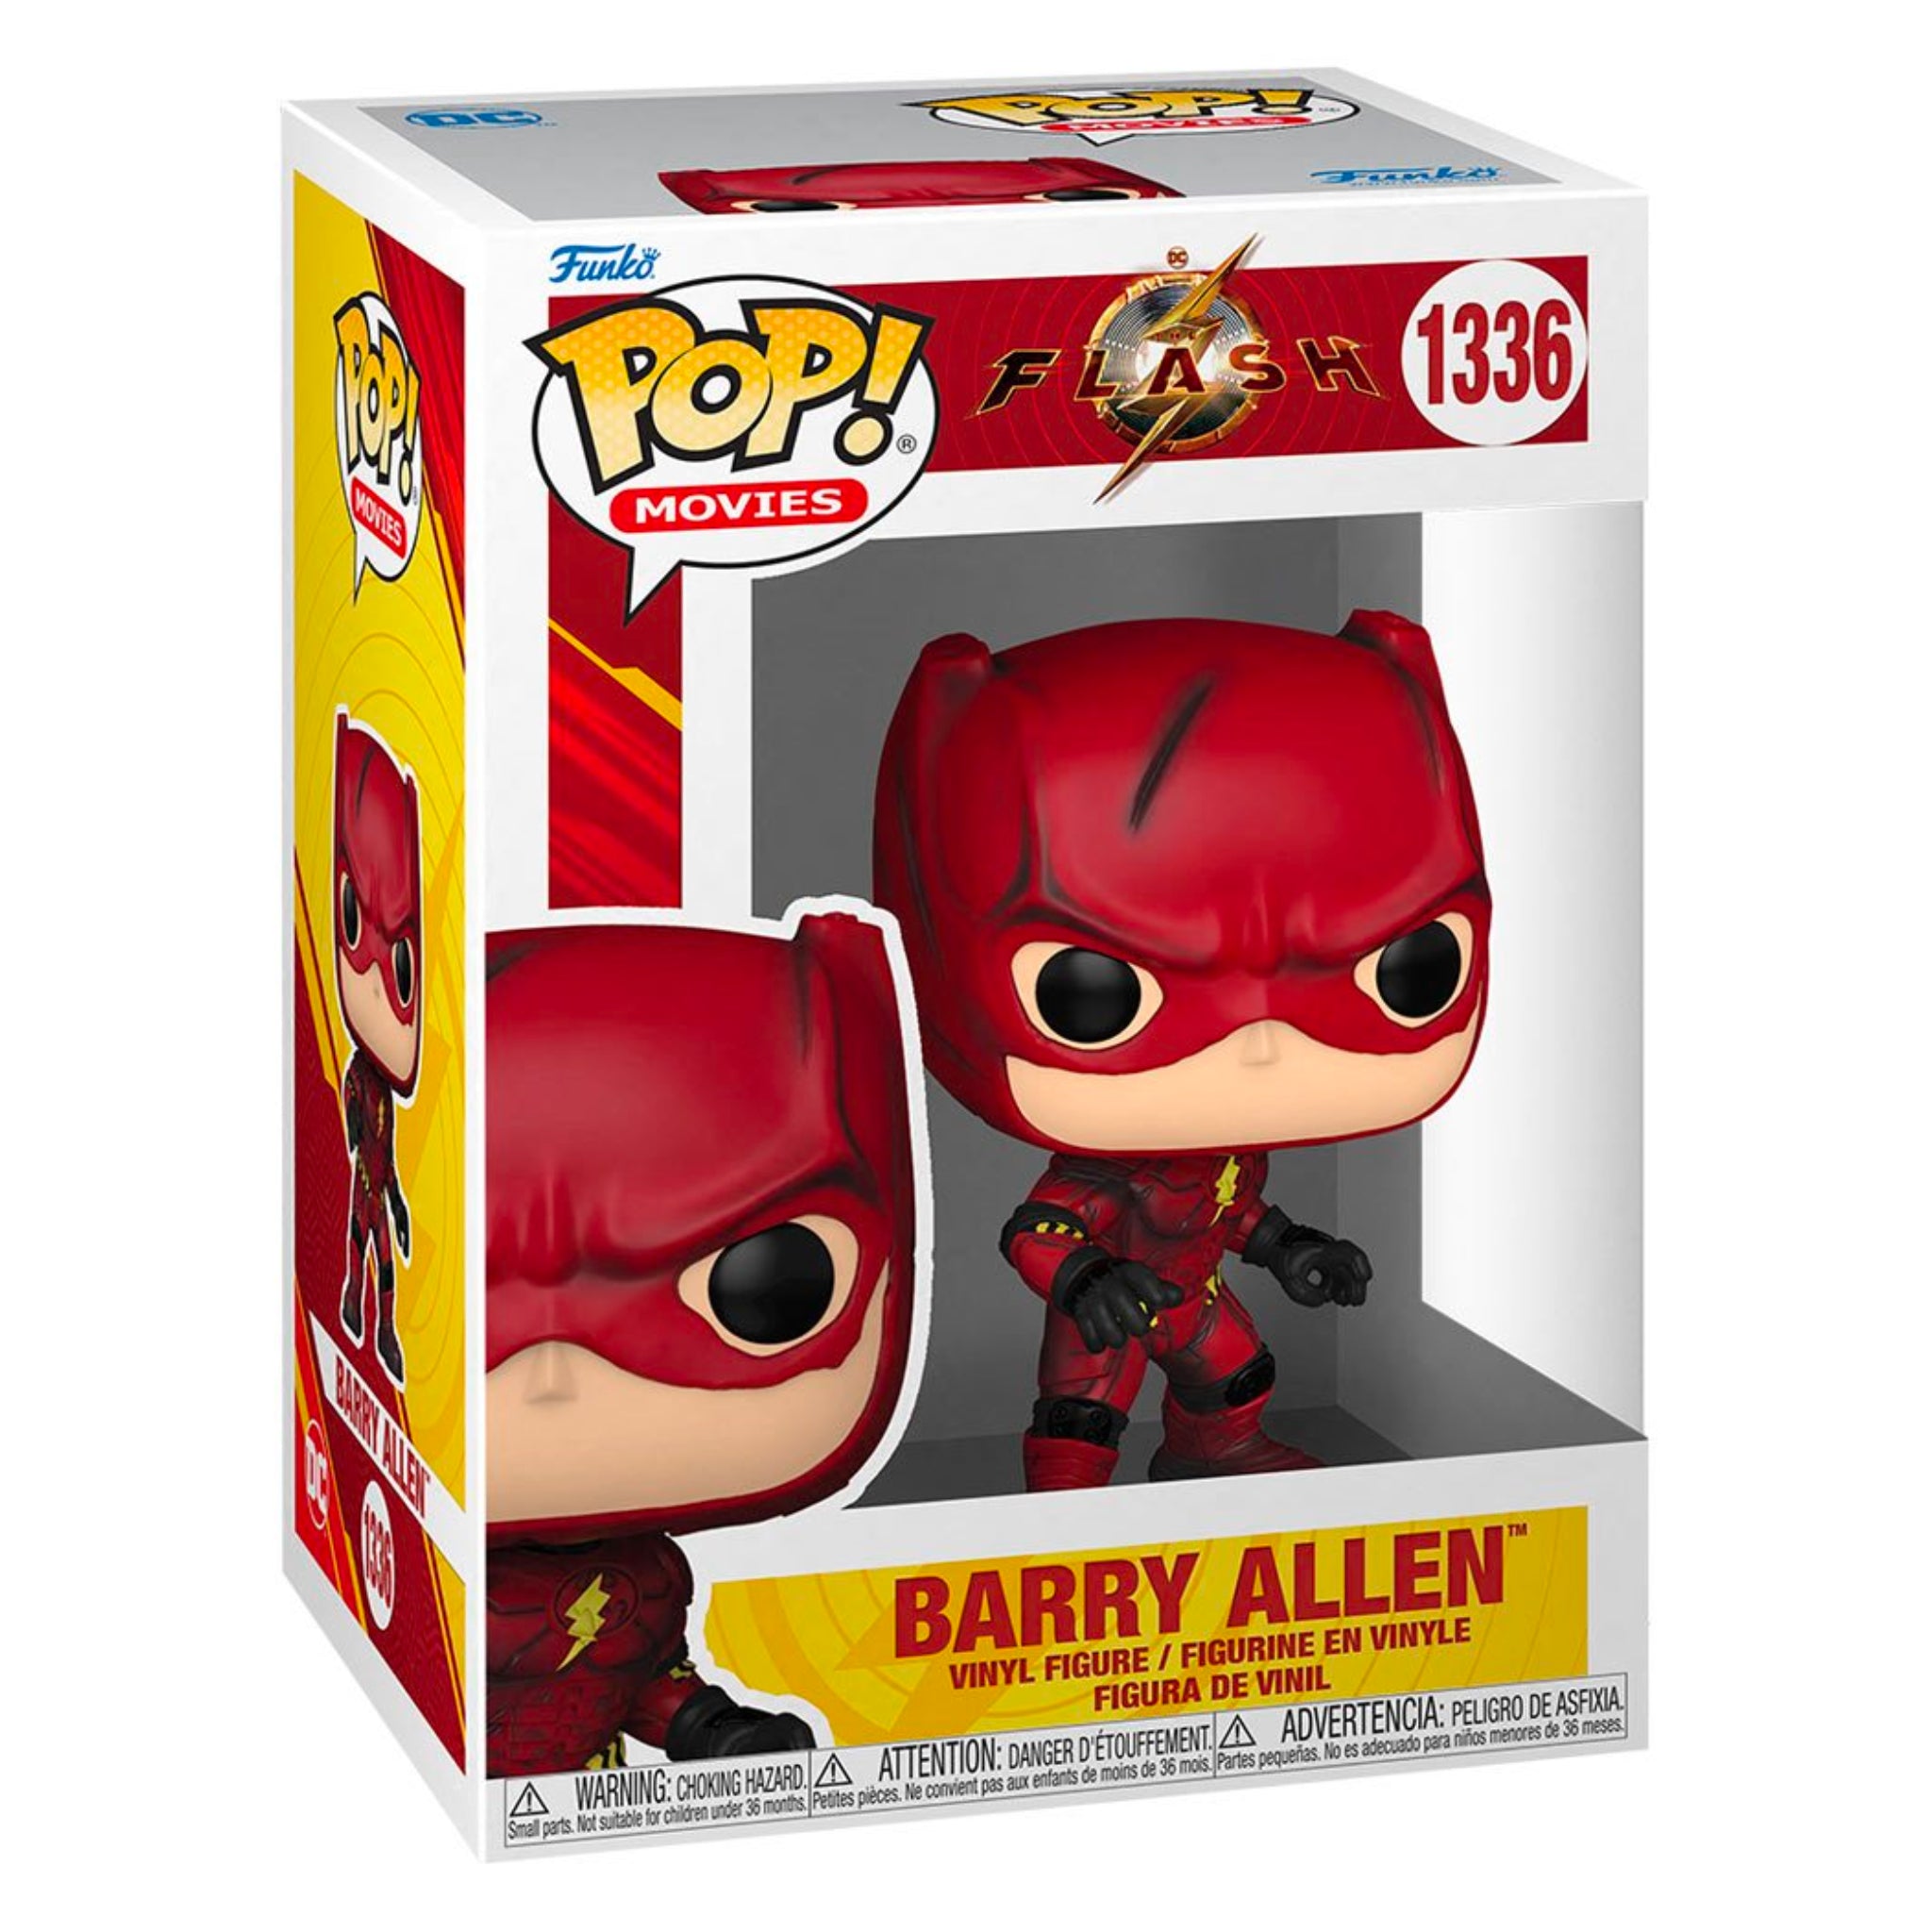 Barry Allen Funko Pop!